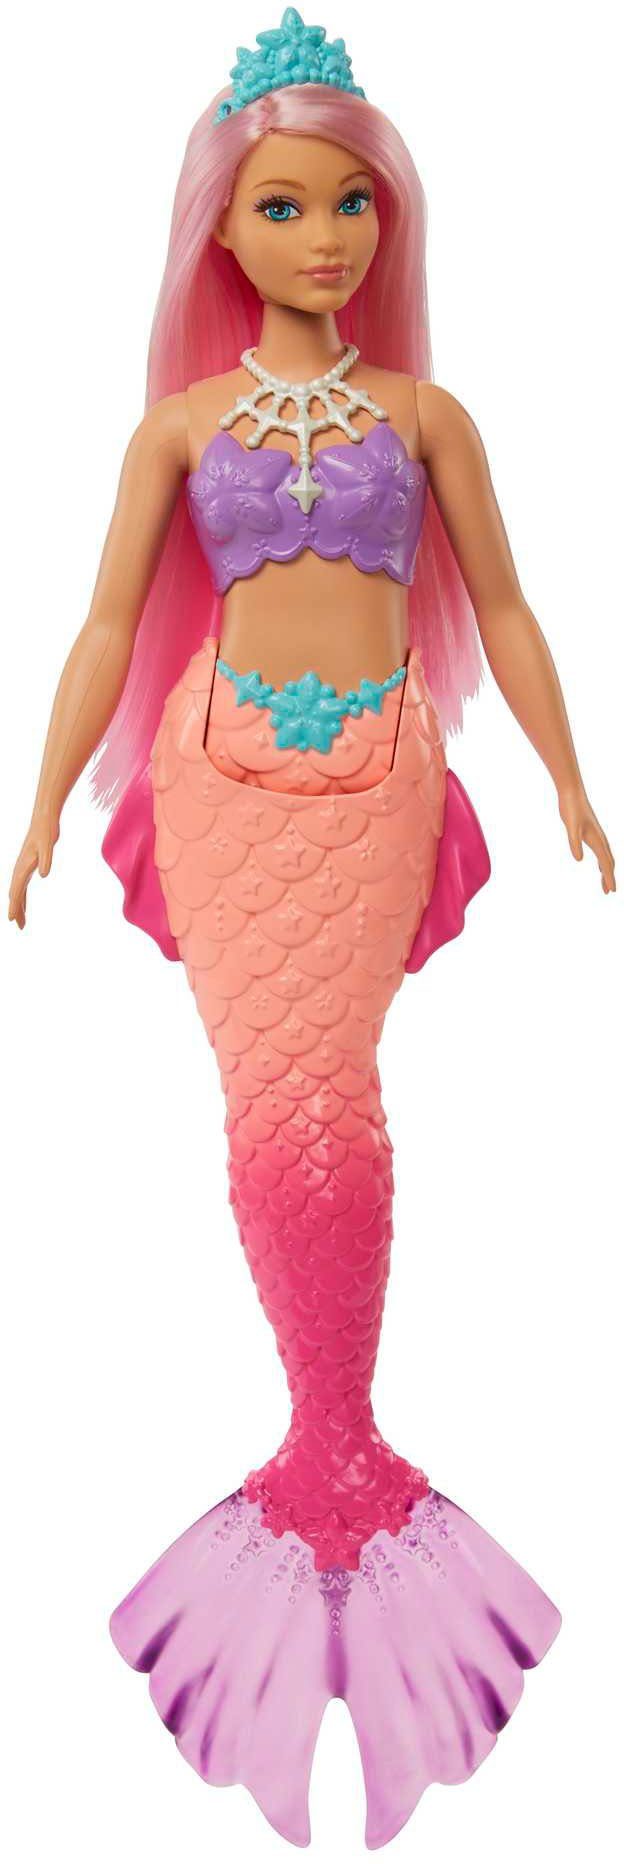 Barbie Meerjungfrauenpuppe Dreamtopia Meerjungfrau-Puppe